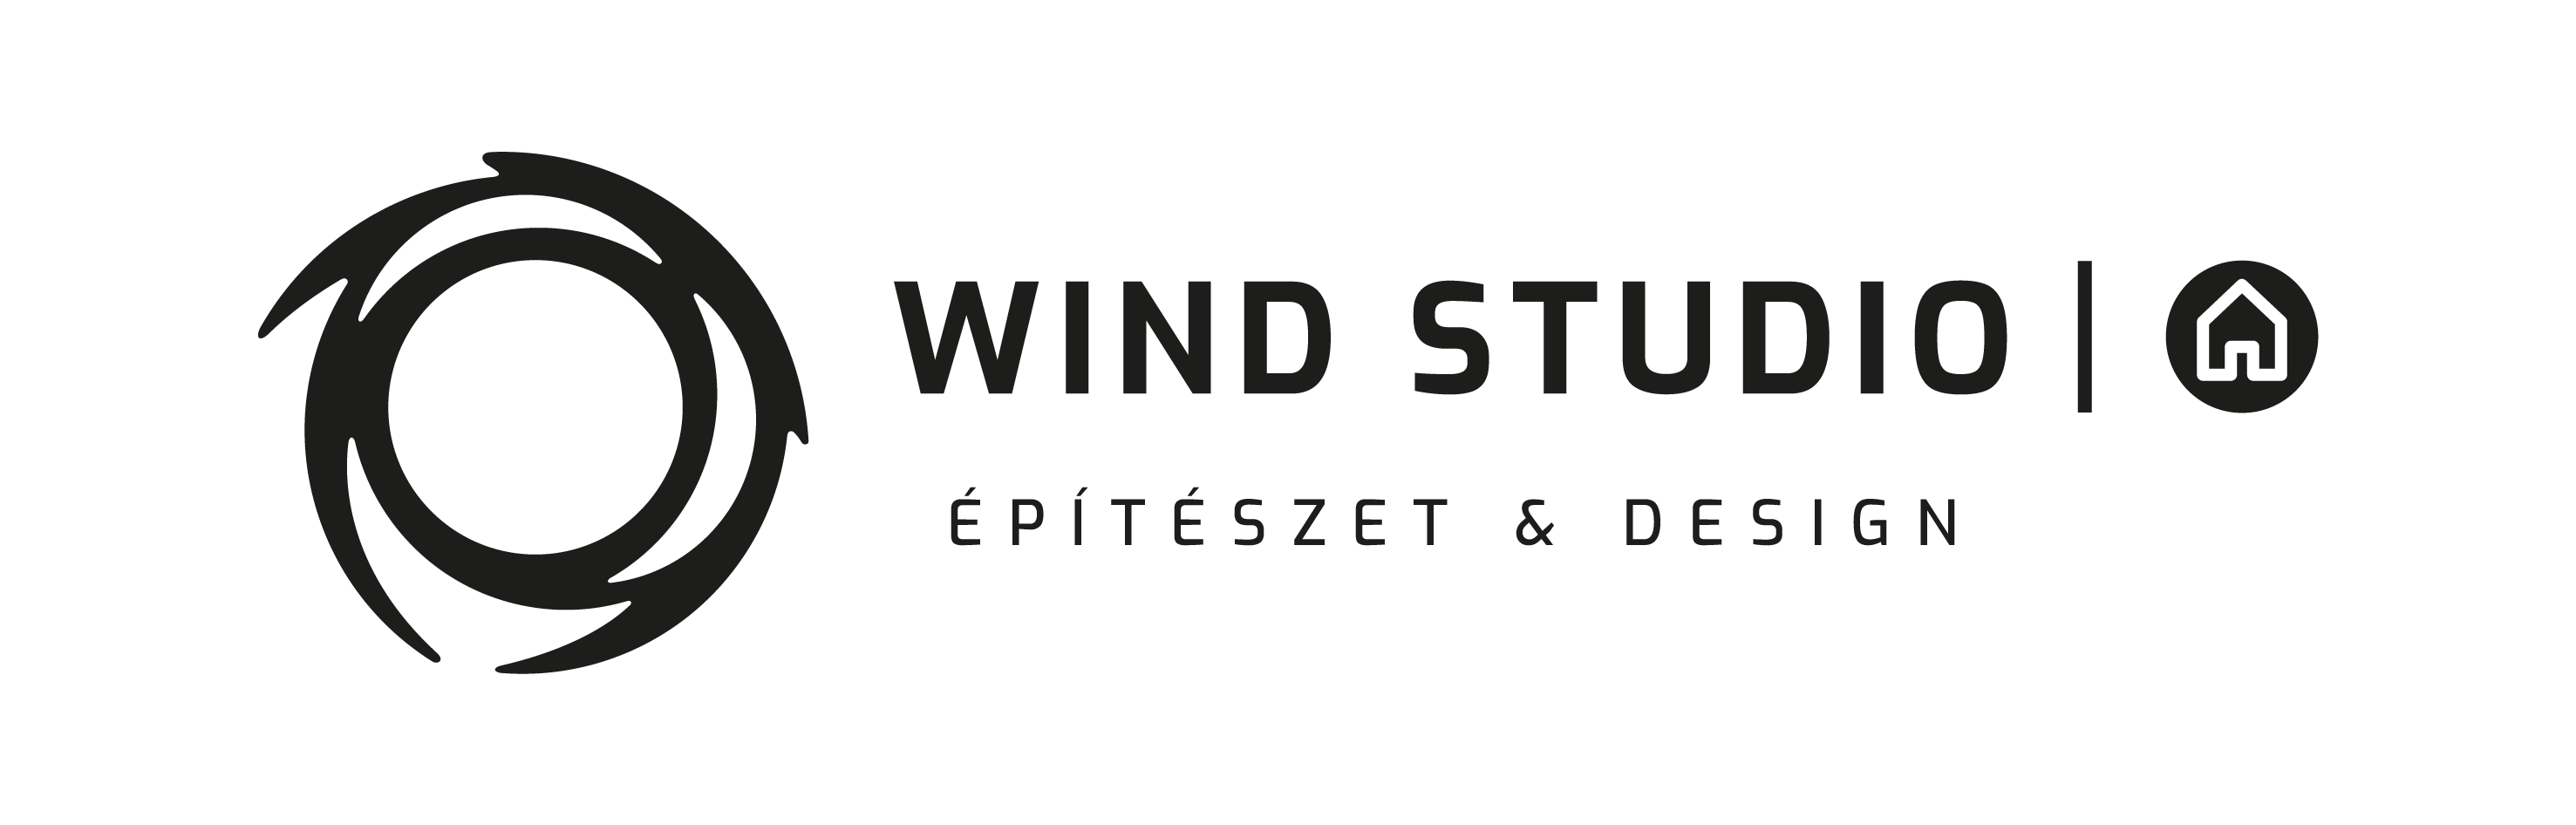 Wind Studio